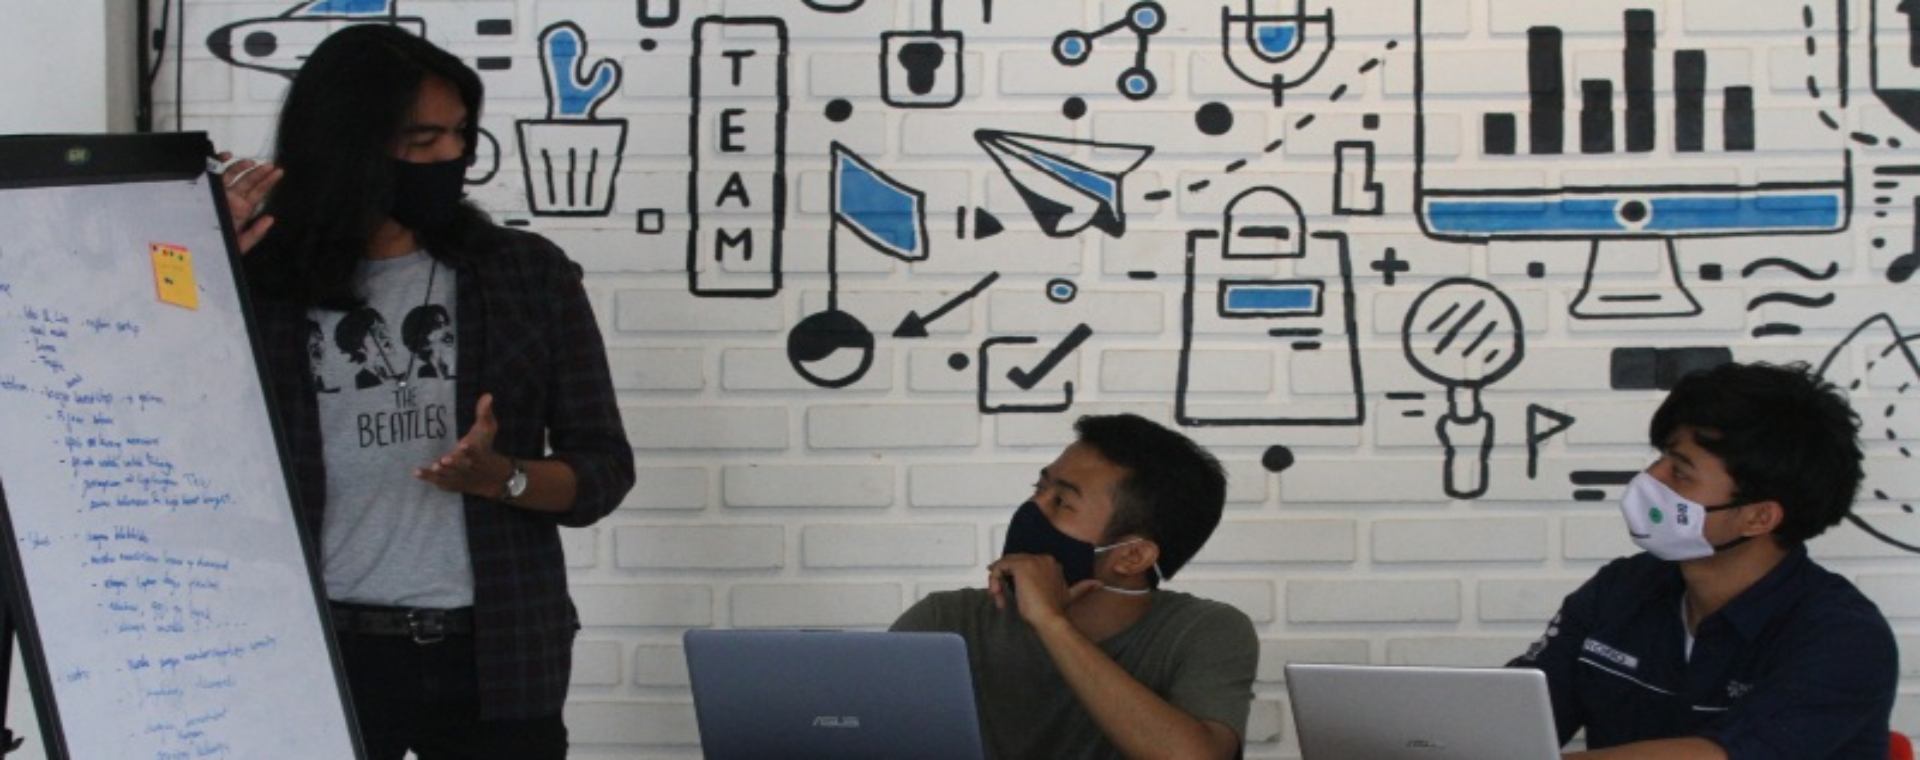 Pengelola perusahaan rintisan digital atau startup mengoperasikan program pelayanan di sebuah kantor bersama berbasis jaringan internet (Coworking space) Ngalup.Co di Malang, Jawa Timur, Senin (12/10/2020)./ANTARA FOTO-Ari Bowo Sucipto